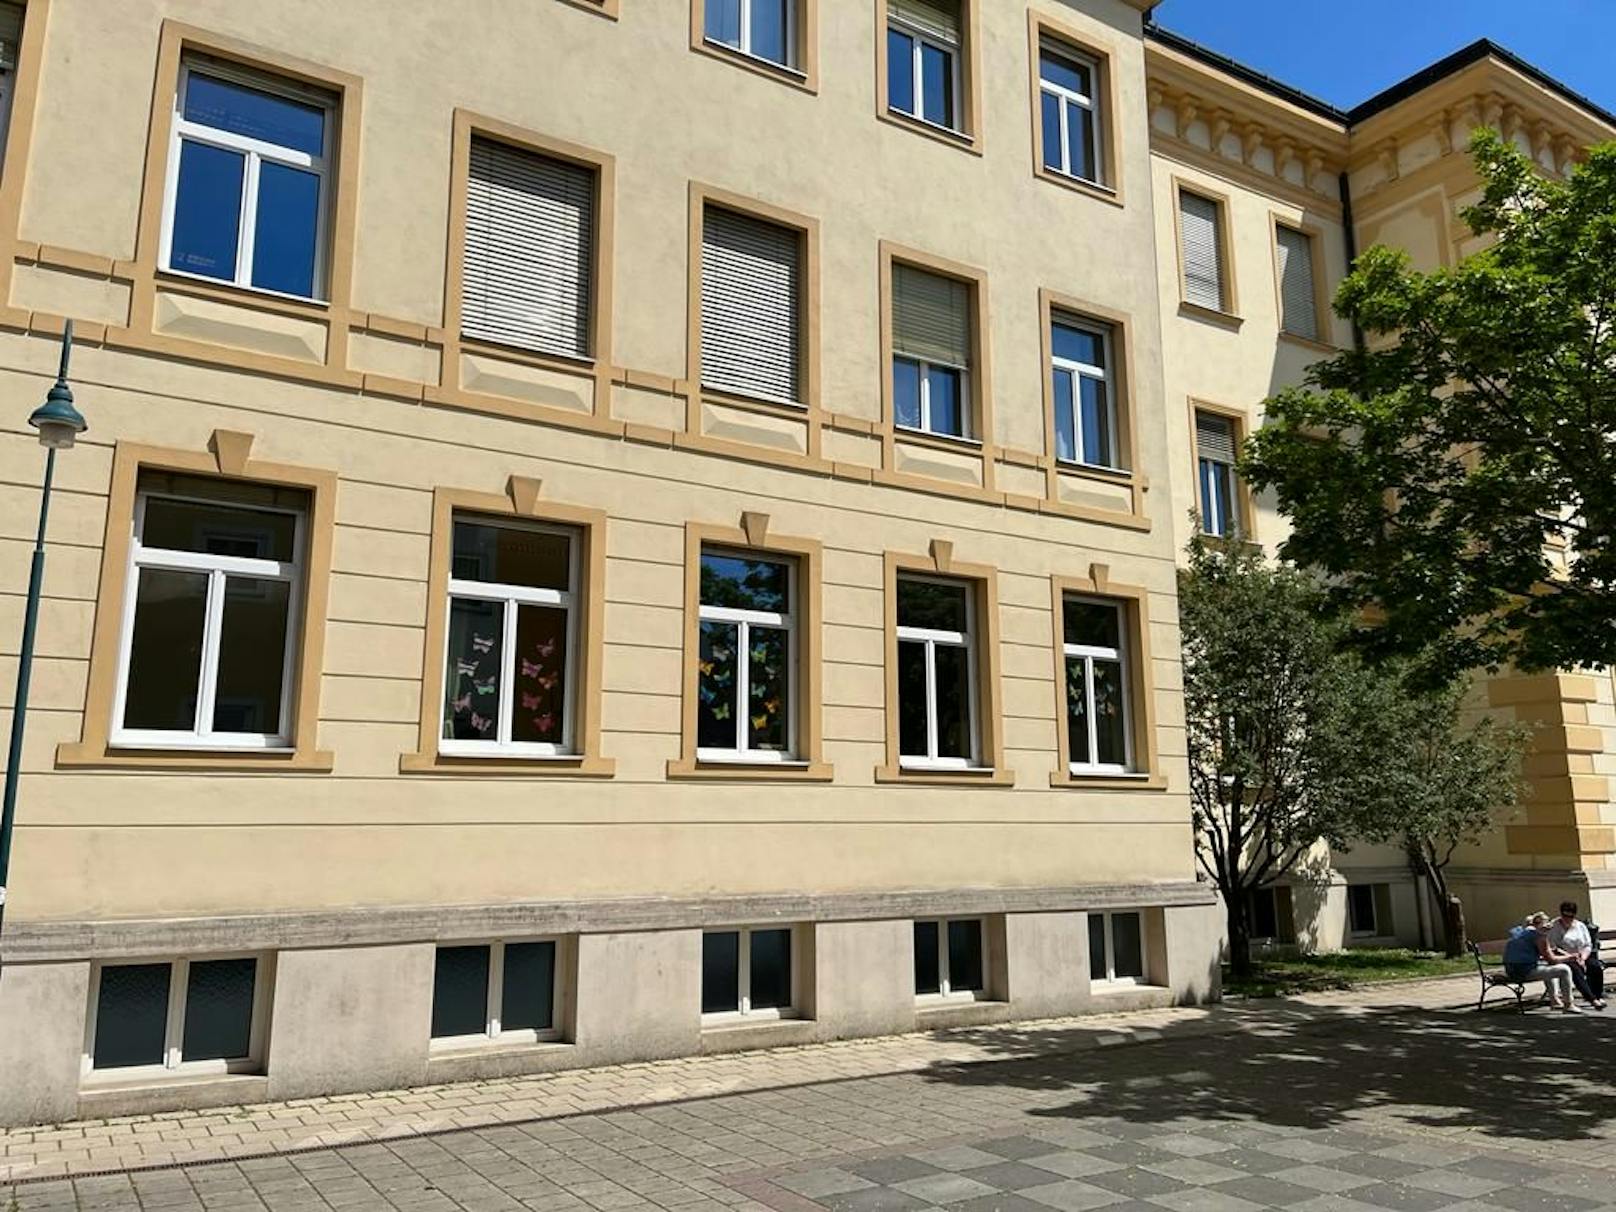 Im Pflichtschulzentrum Mistelbach war ein Amoklauf angekündigt worden